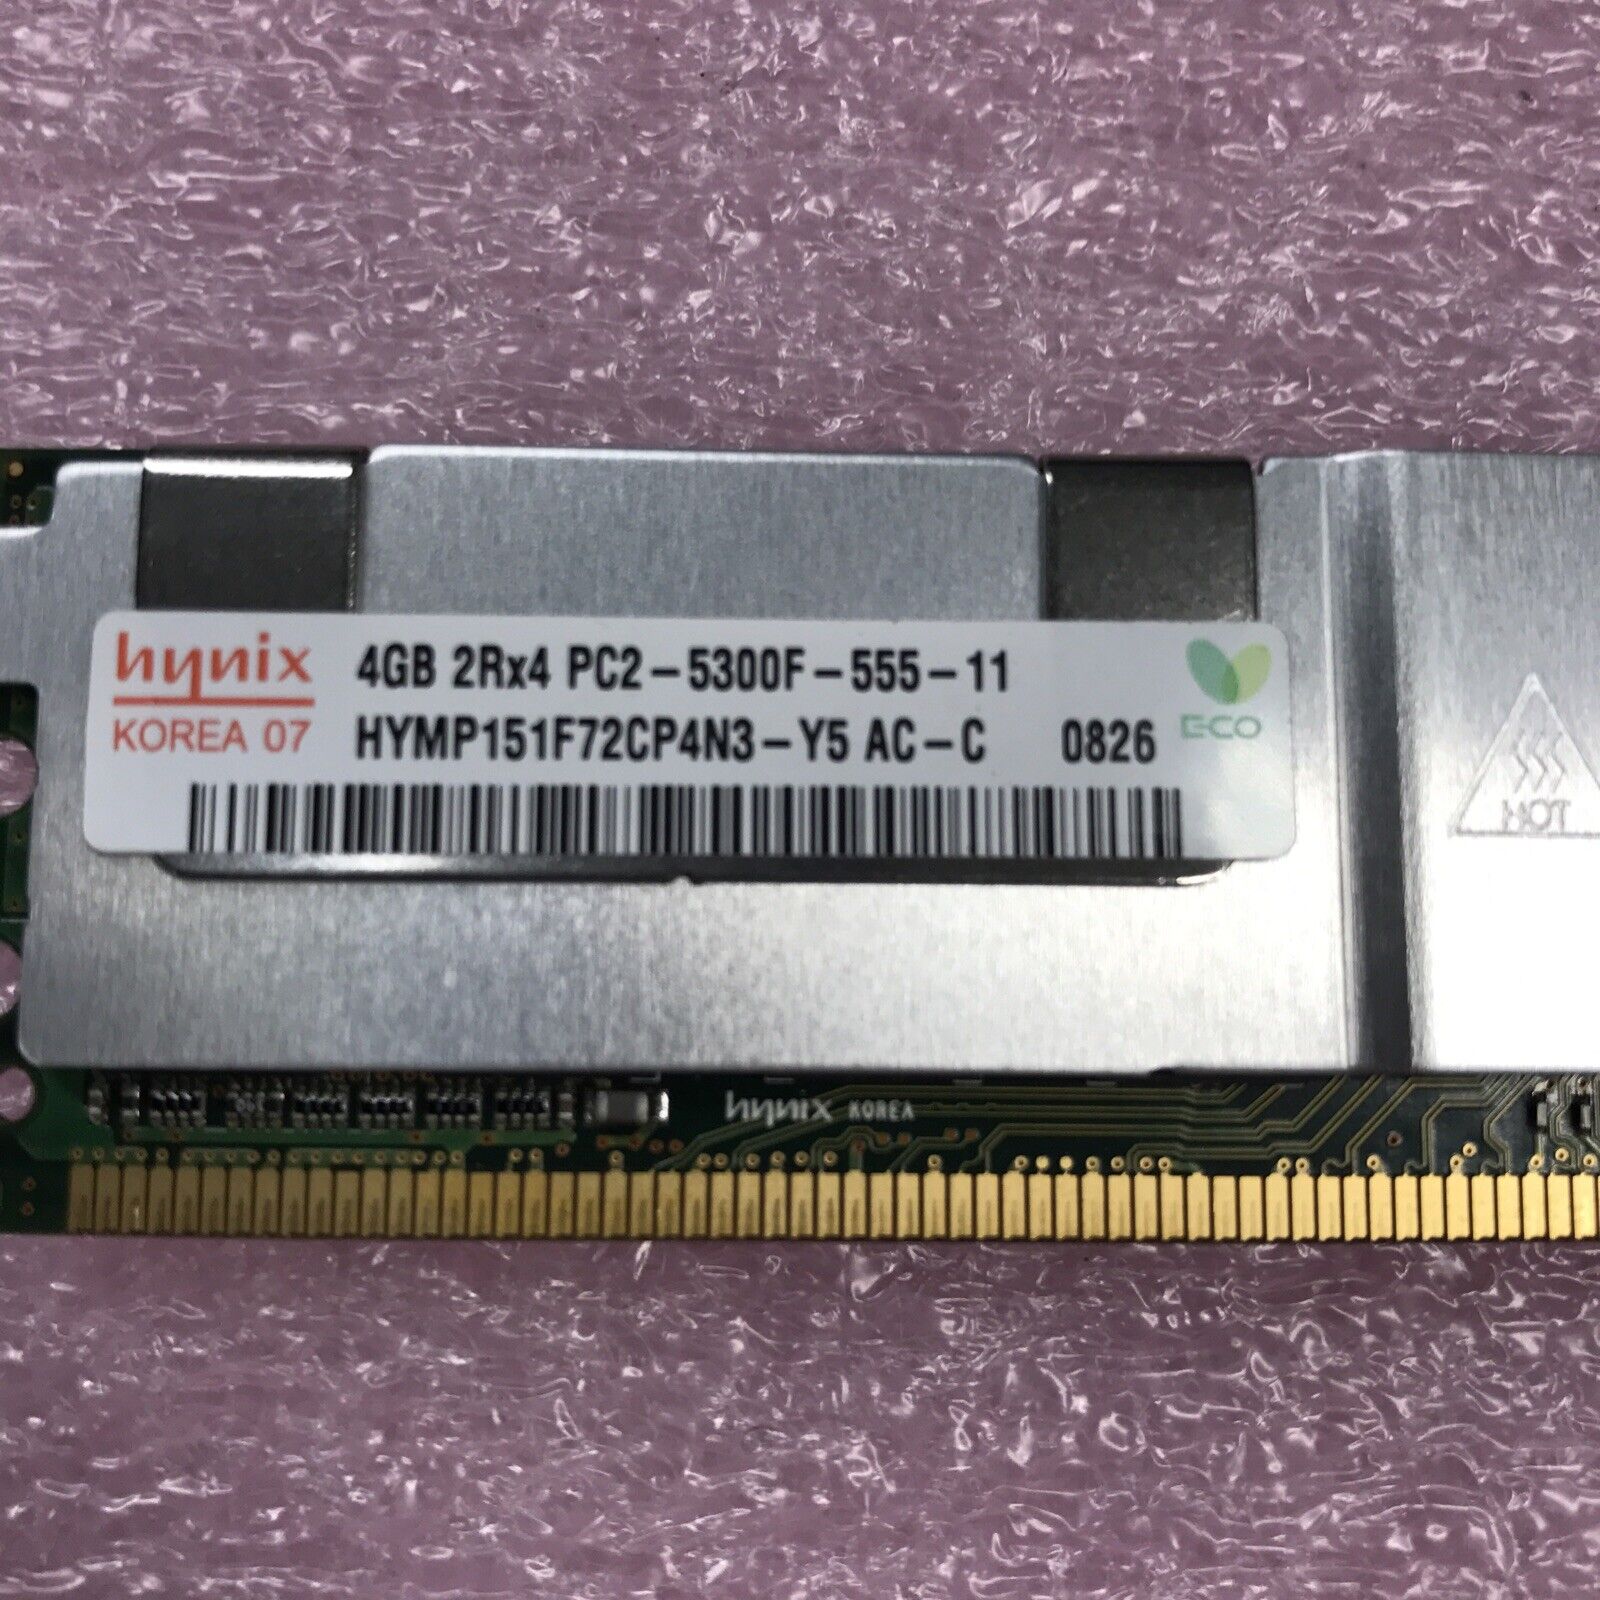 Hynix 12GB Kit 3x4GB 2Rx4 PC2 -5300F-555-11 Ram HYMP151F72CP4N3